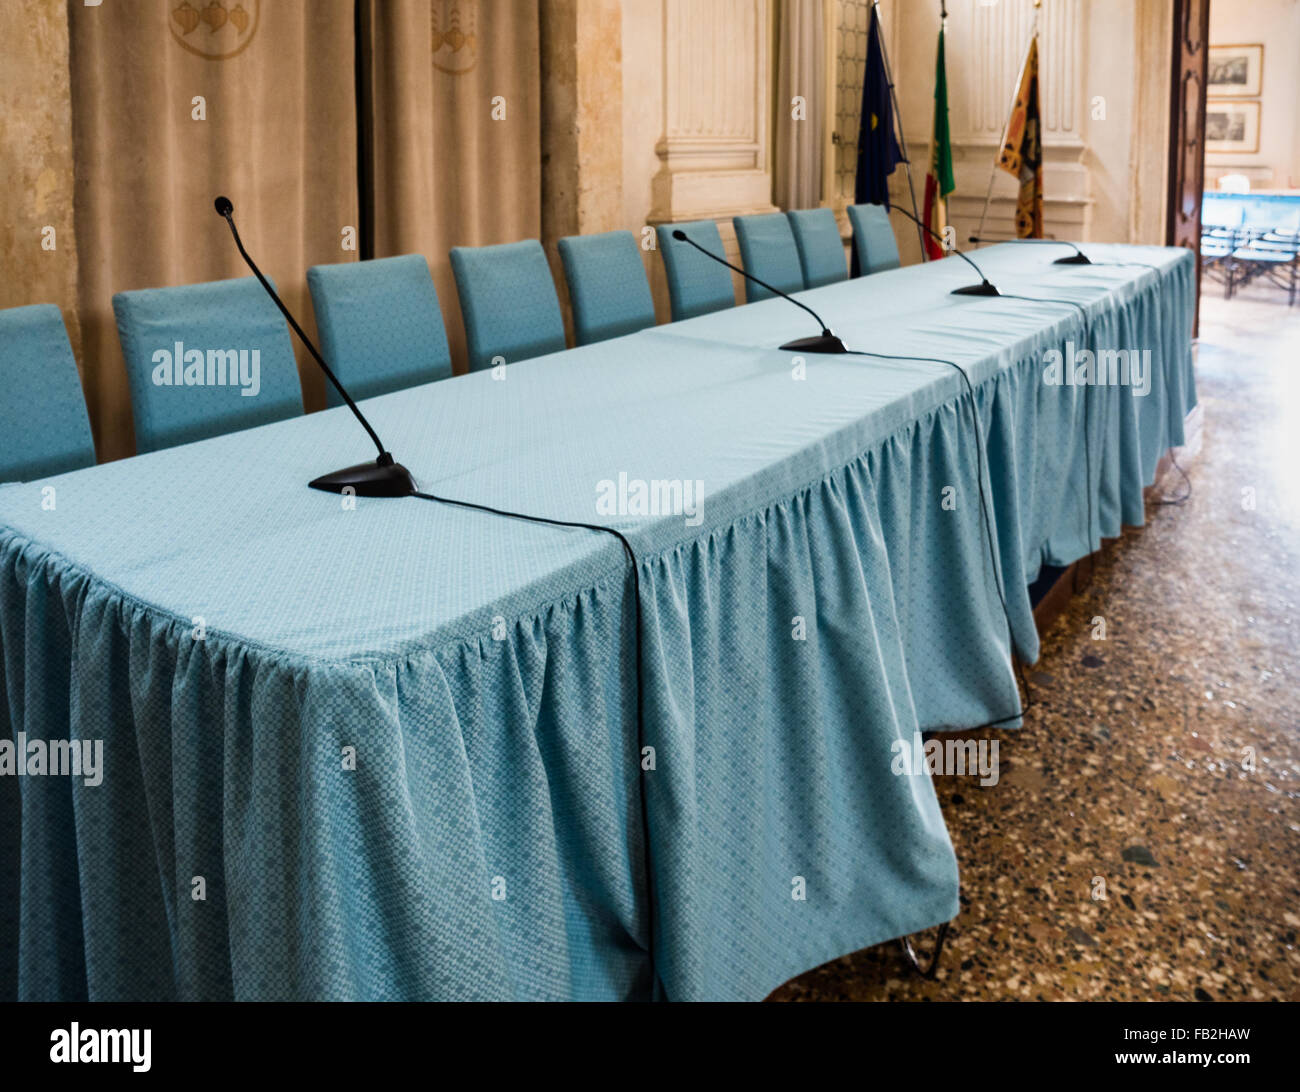 Tableau de conférence et des chaises recouvertes de tissu bleu. Banque D'Images